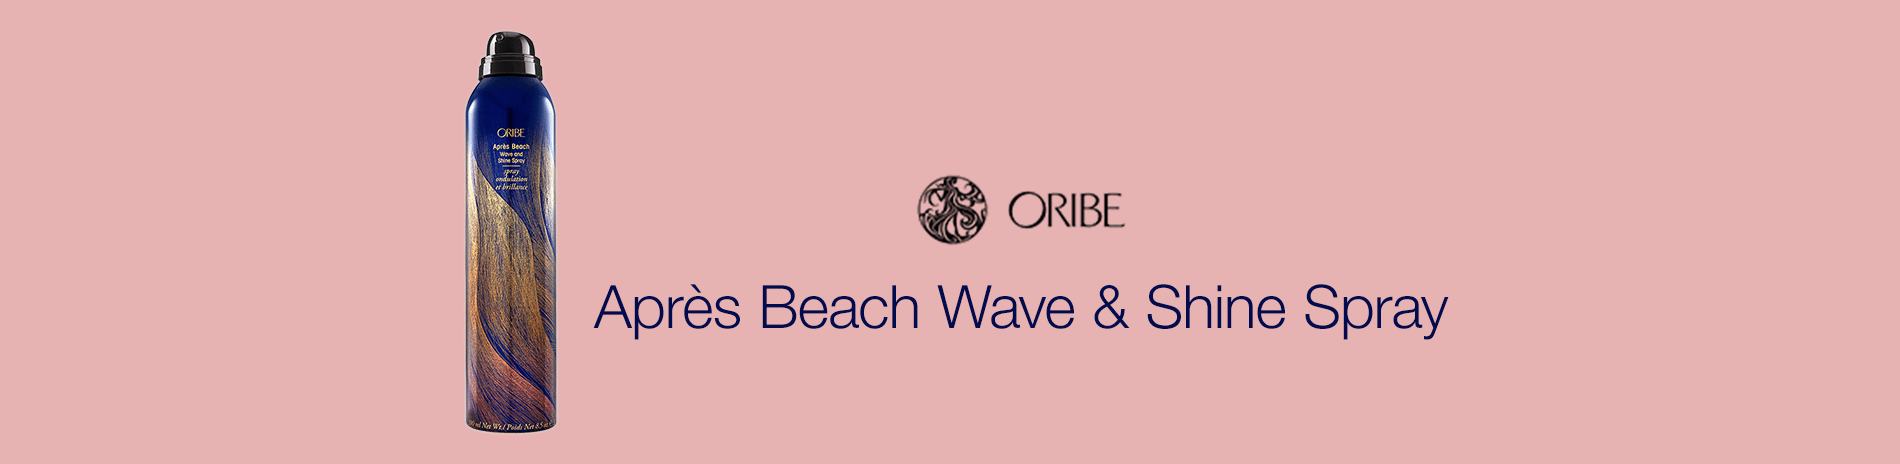 Oribe Apres Beach Wave & Shine Spray